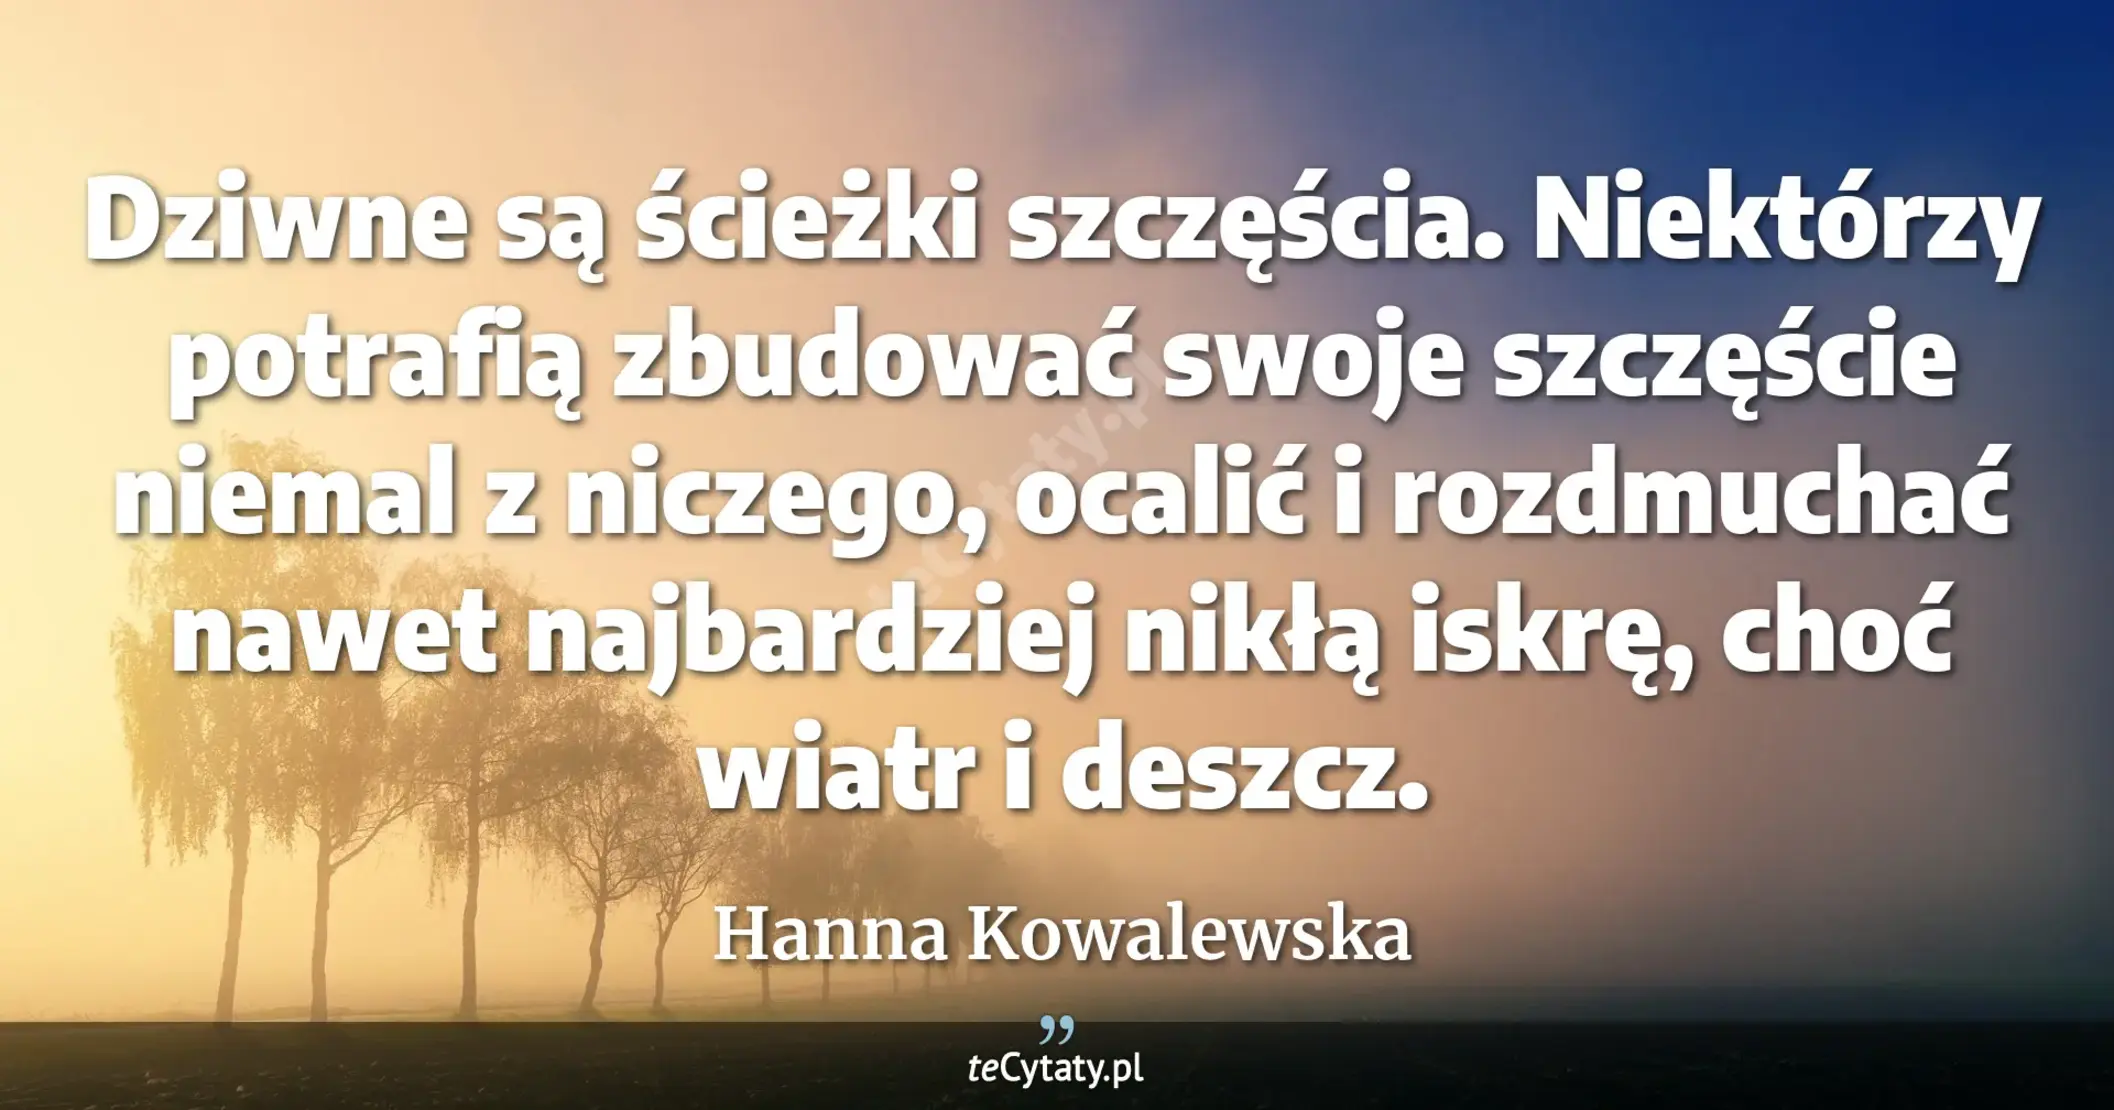 Dziwne są ścieżki szczęścia. Niektórzy potrafią zbudować swoje szczęście niemal z niczego, ocalić i rozdmuchać nawet najbardziej nikłą iskrę, choć wiatr i deszcz. - Hanna Kowalewska